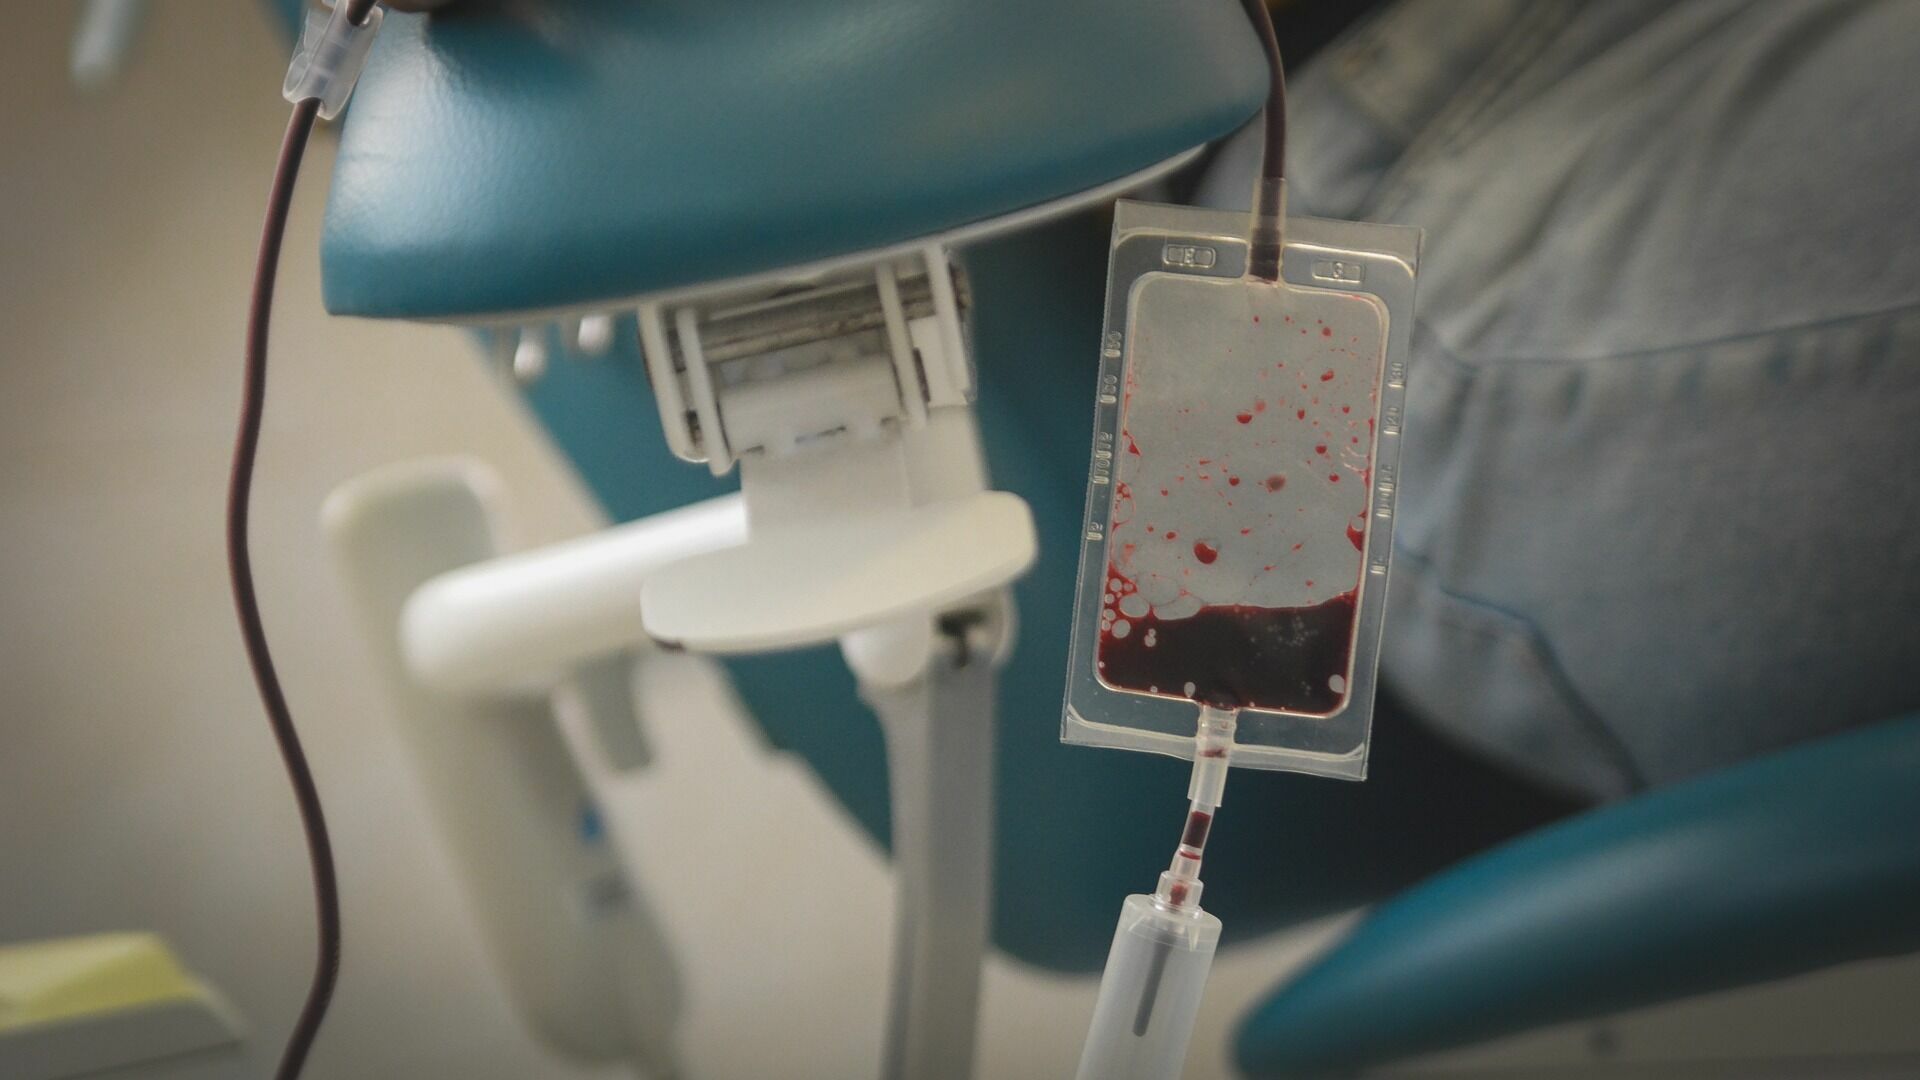 Переливание крови 